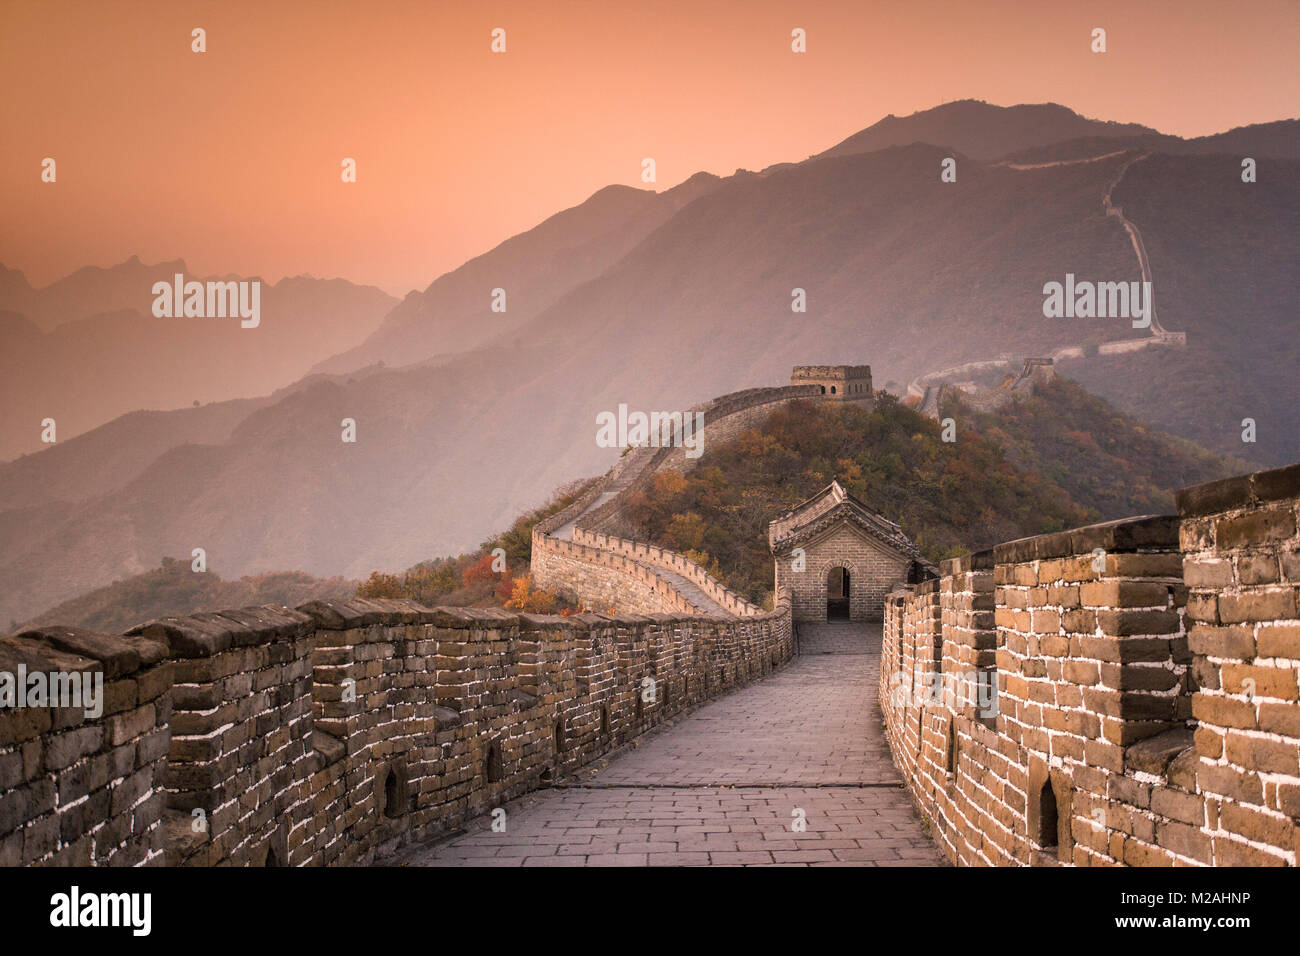 La Chine. Mutianyu, près de Beijing. La Grande Muraille. Le coucher du soleil. UNESCO World Heritage site. Banque D'Images